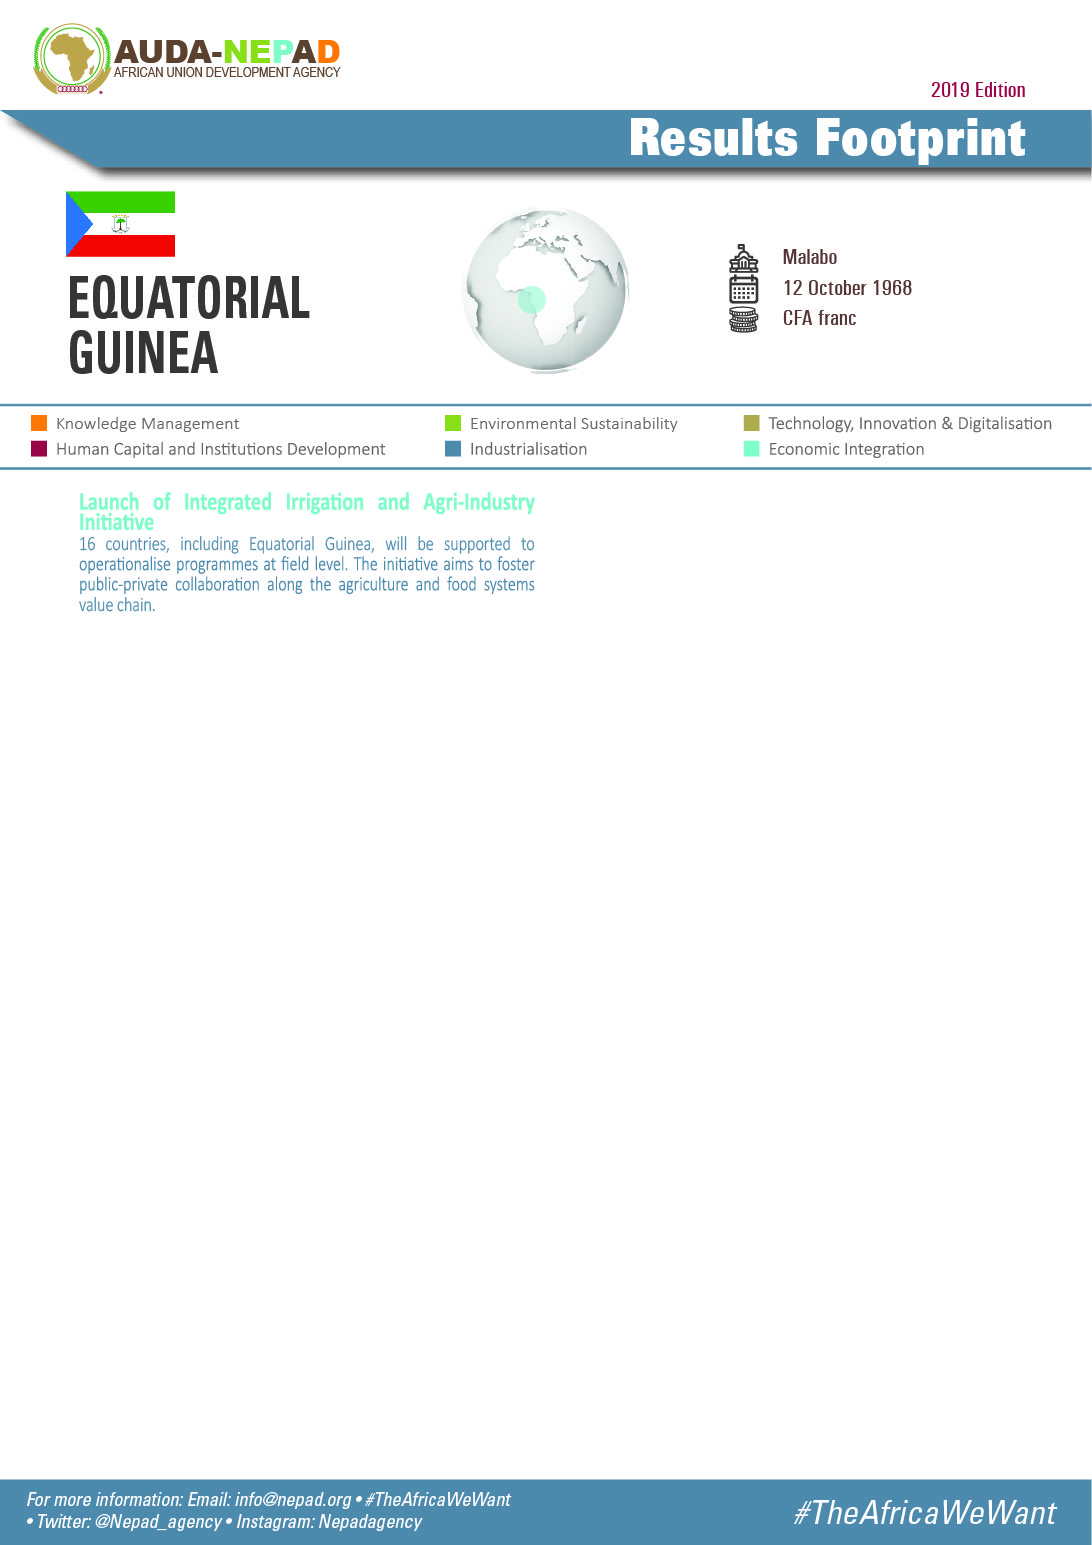 2019 AUDA-NEPAD Footprint: Country Profiles: Equatorial Guinea